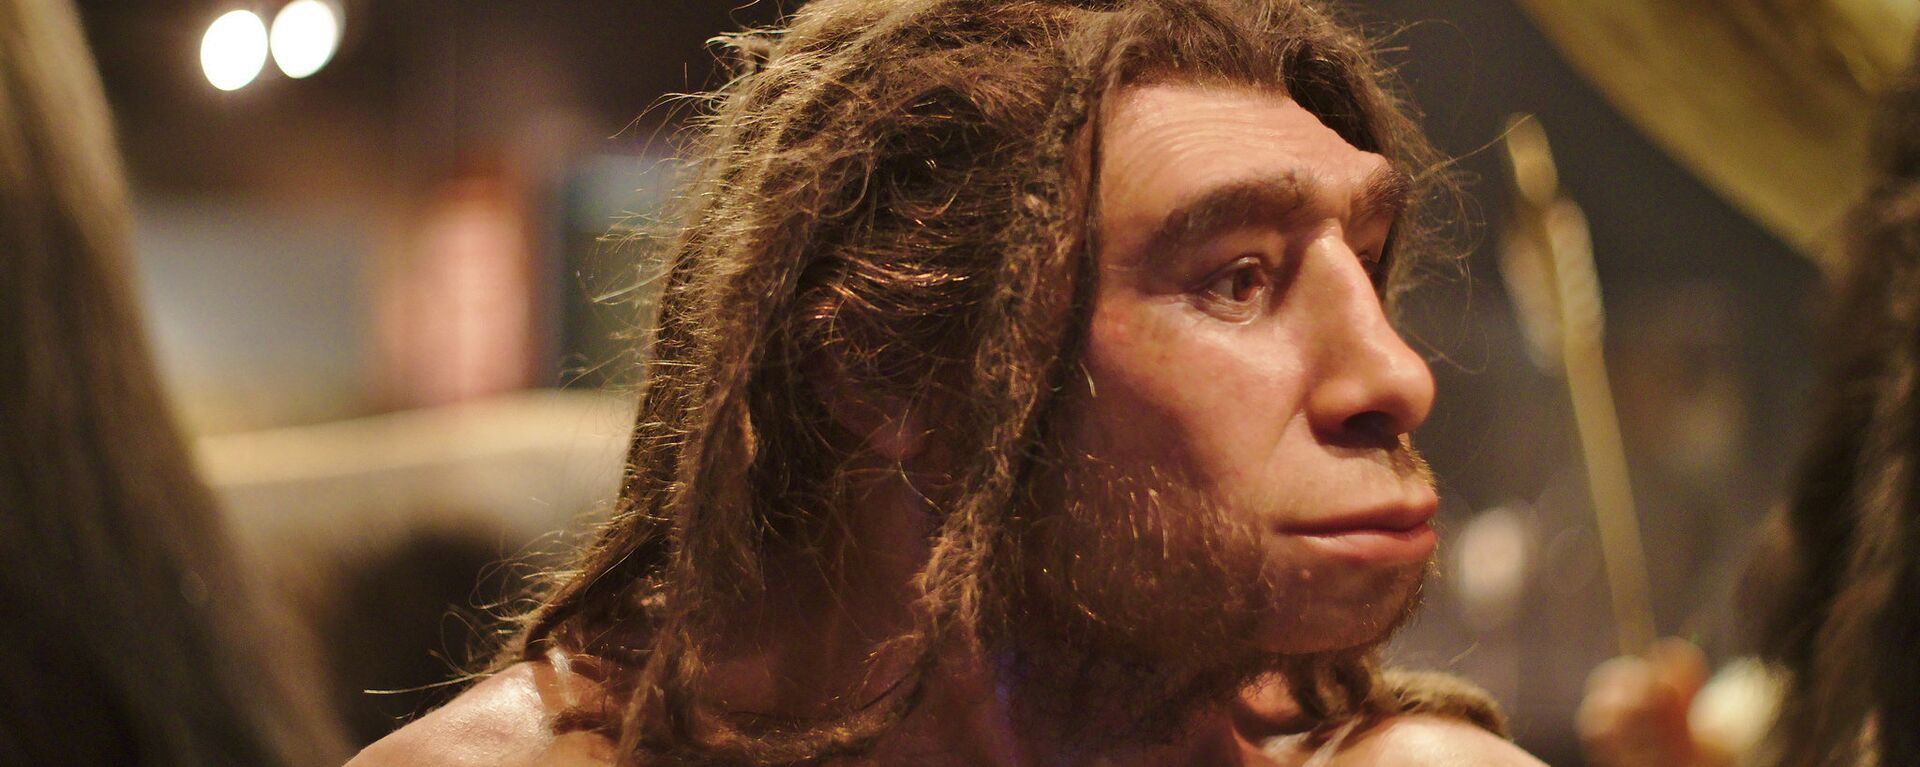 Un homo neanderthalensis en el museo de Munster (Alemania) - Sputnik Mundo, 1920, 25.04.2020